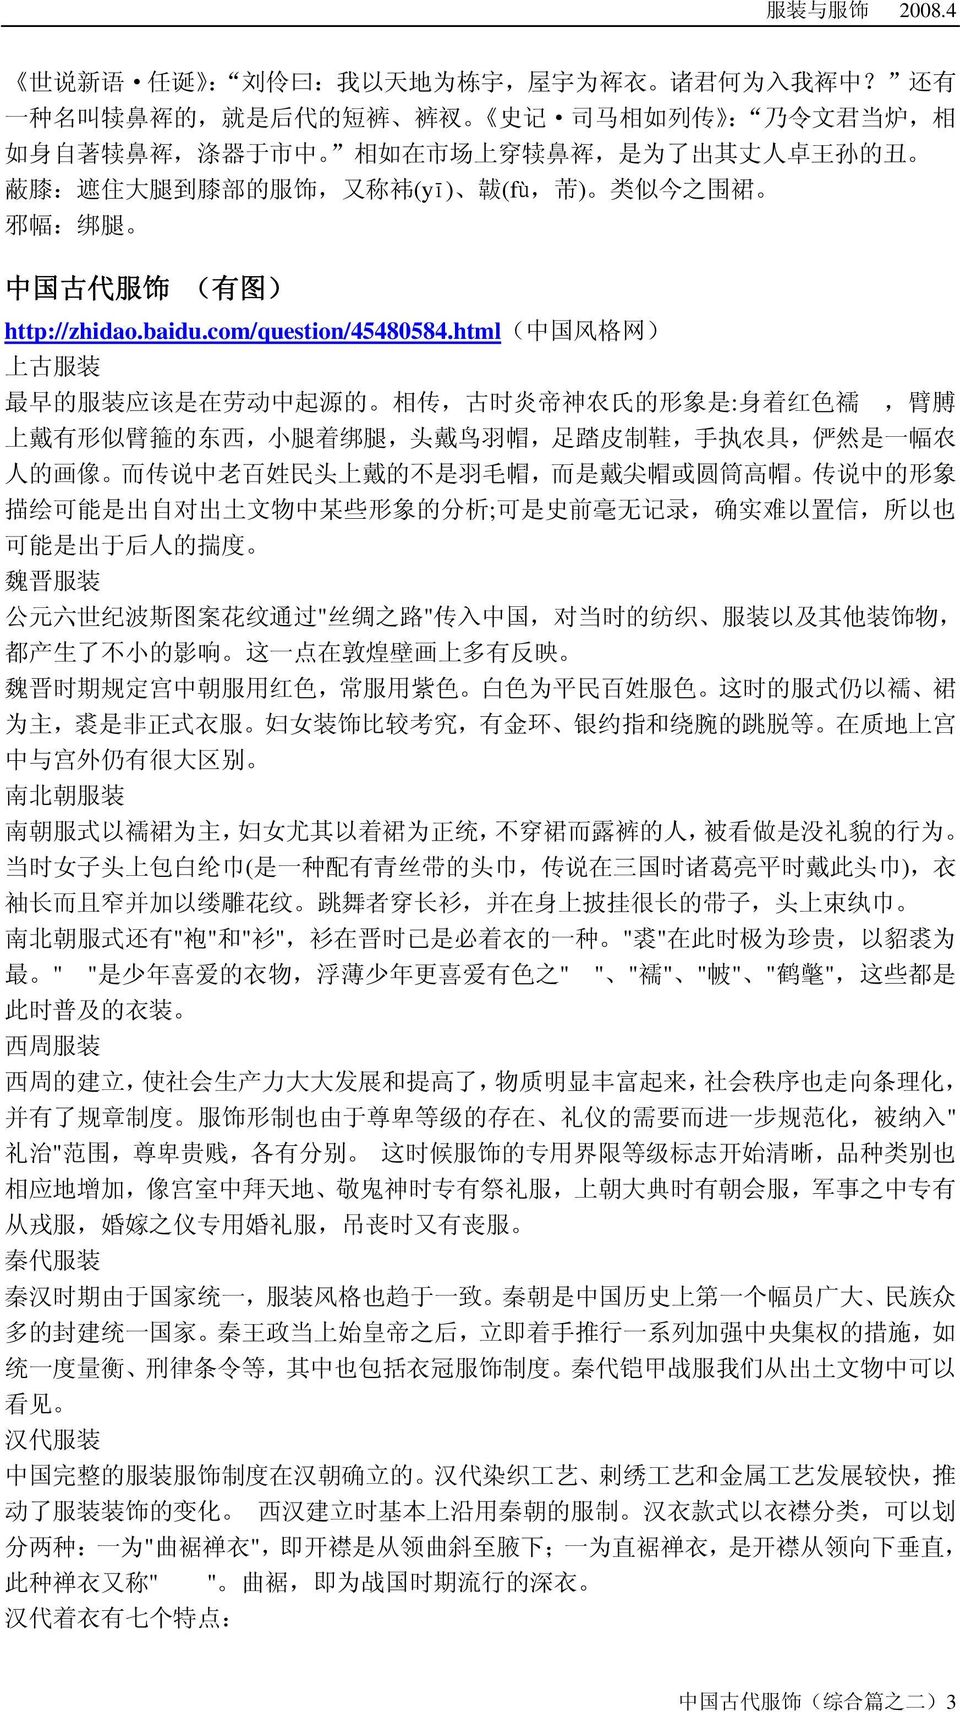 围 裙 邪 幅 : 绑 腿 中 国 古 代 服 饰 ( 有 图 ) http://zhidao.baidu.com/question/45480584.